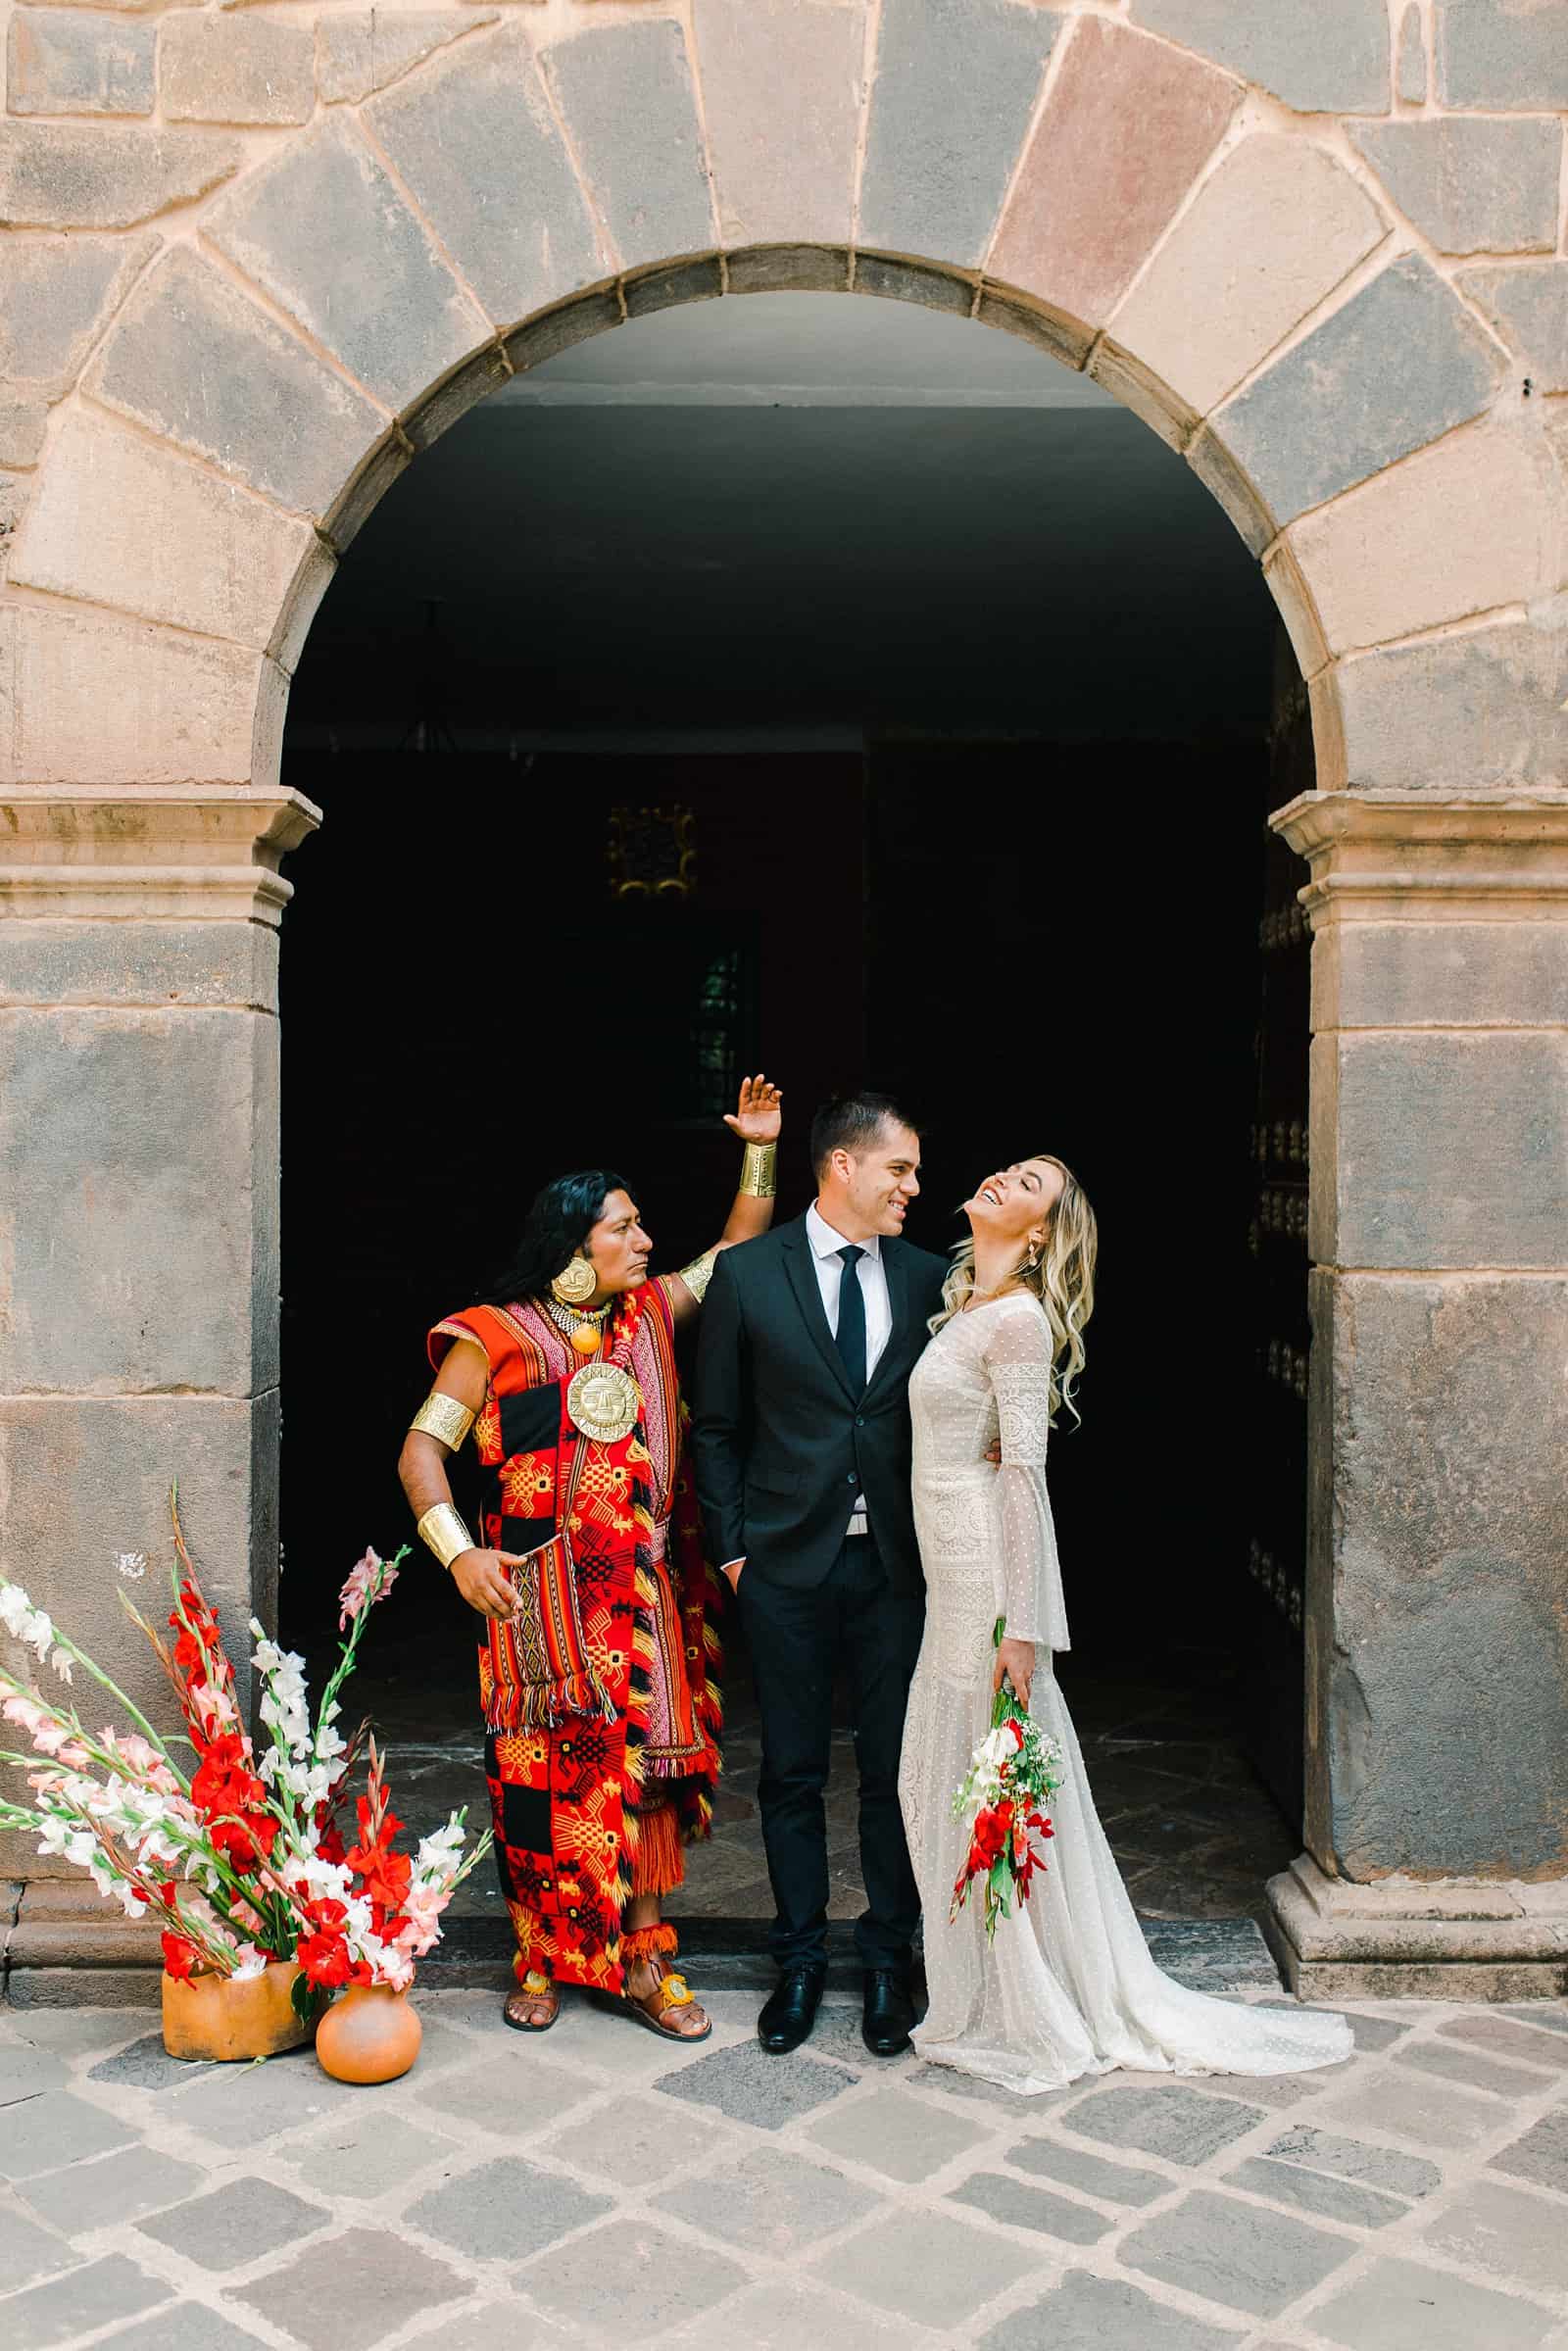 Cusco Peru Destination Wedding, travel wedding photography, Plaza de Armas ceremony with shaman, red flowers boho wedding